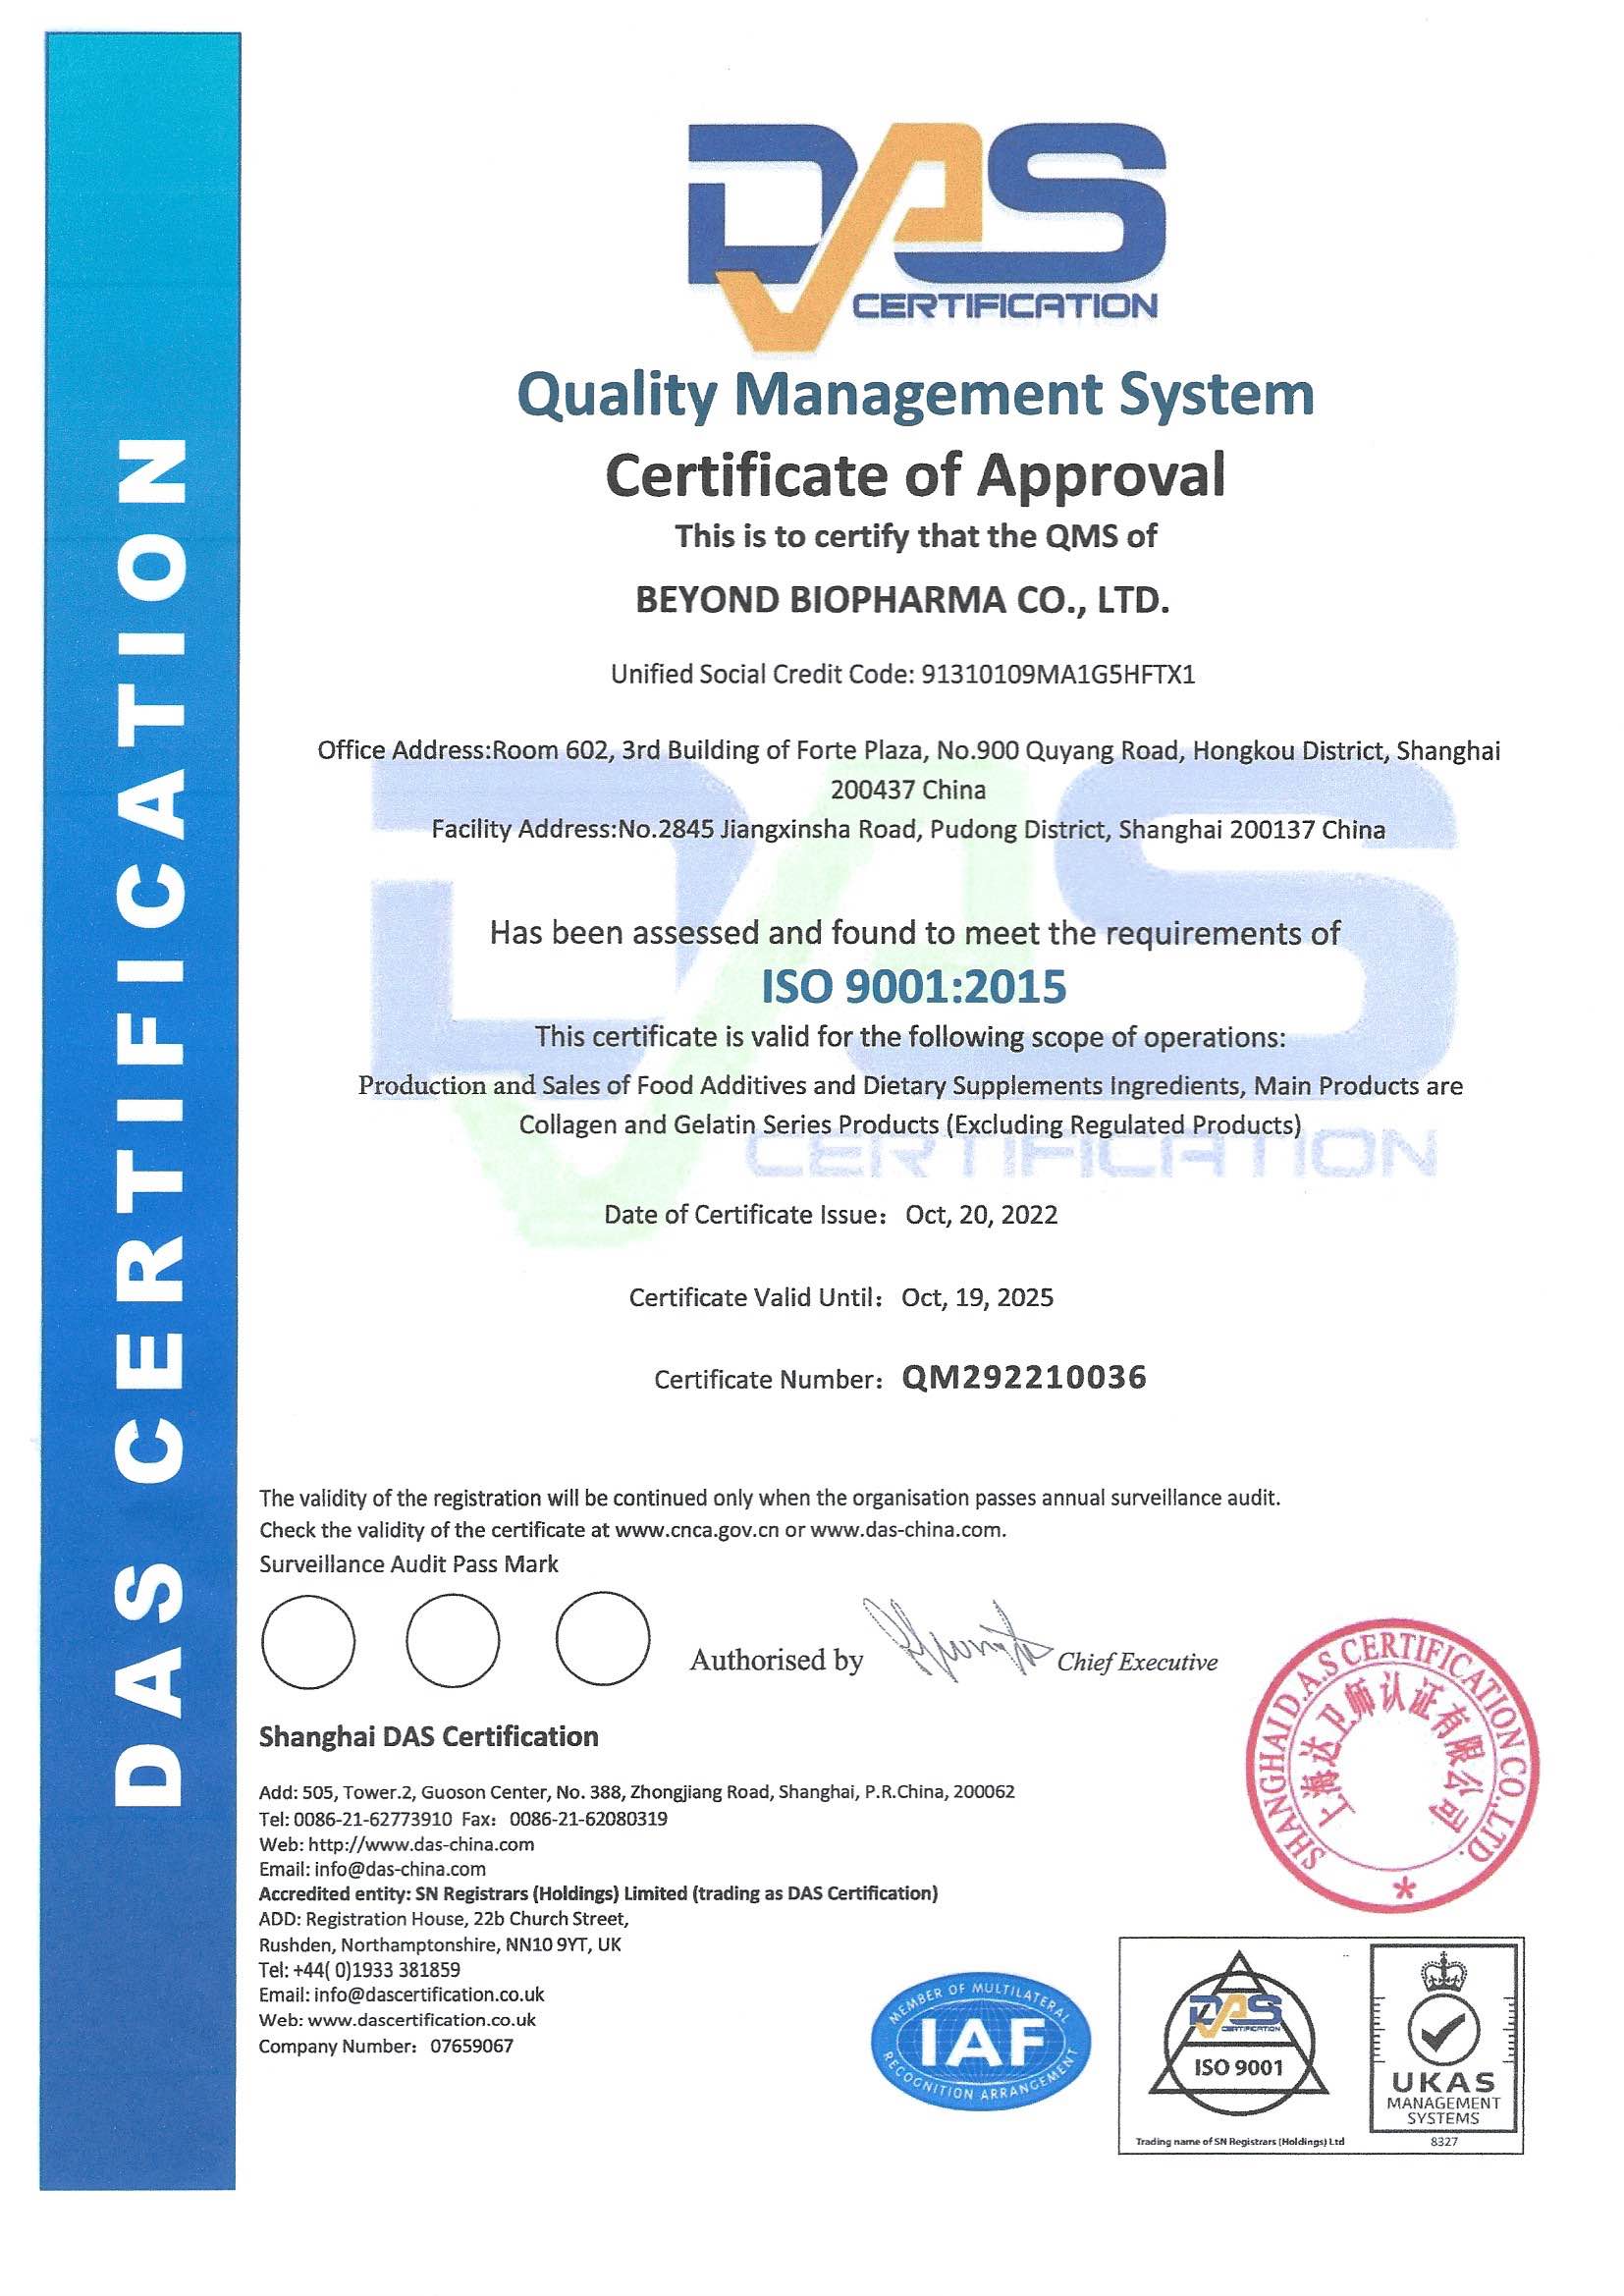 Apsveicam mūsu uzņēmumu ar veiksmīgu ISO 9001:2015 kvalitātes vadības sistēmas sertifikācijas sertifikāta jaunināšanu